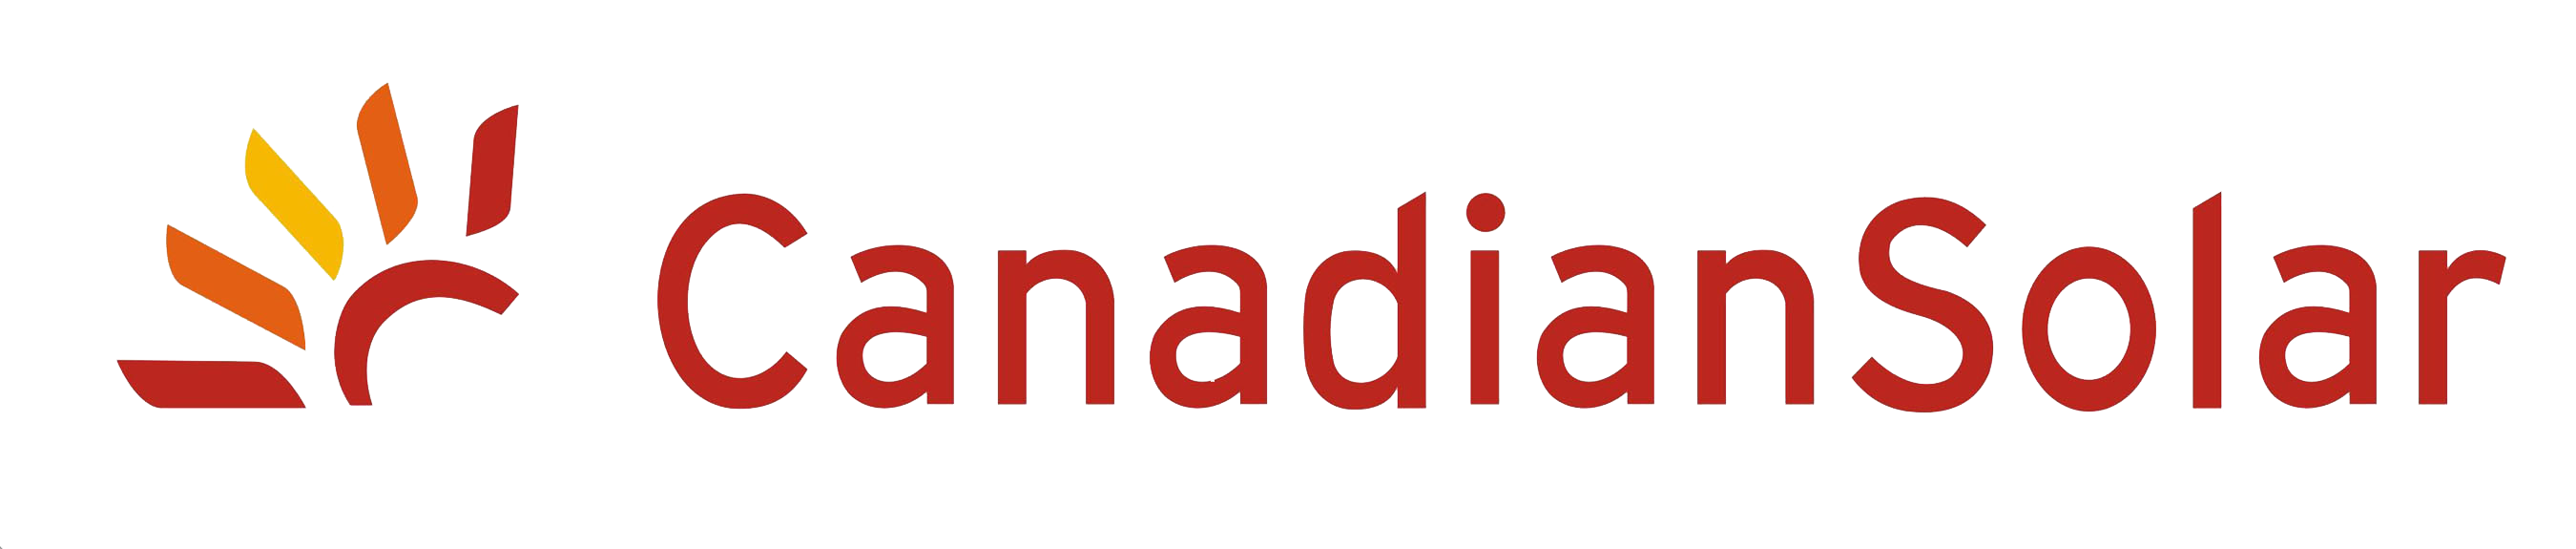 Module24 Partner Canadian Solar Logo